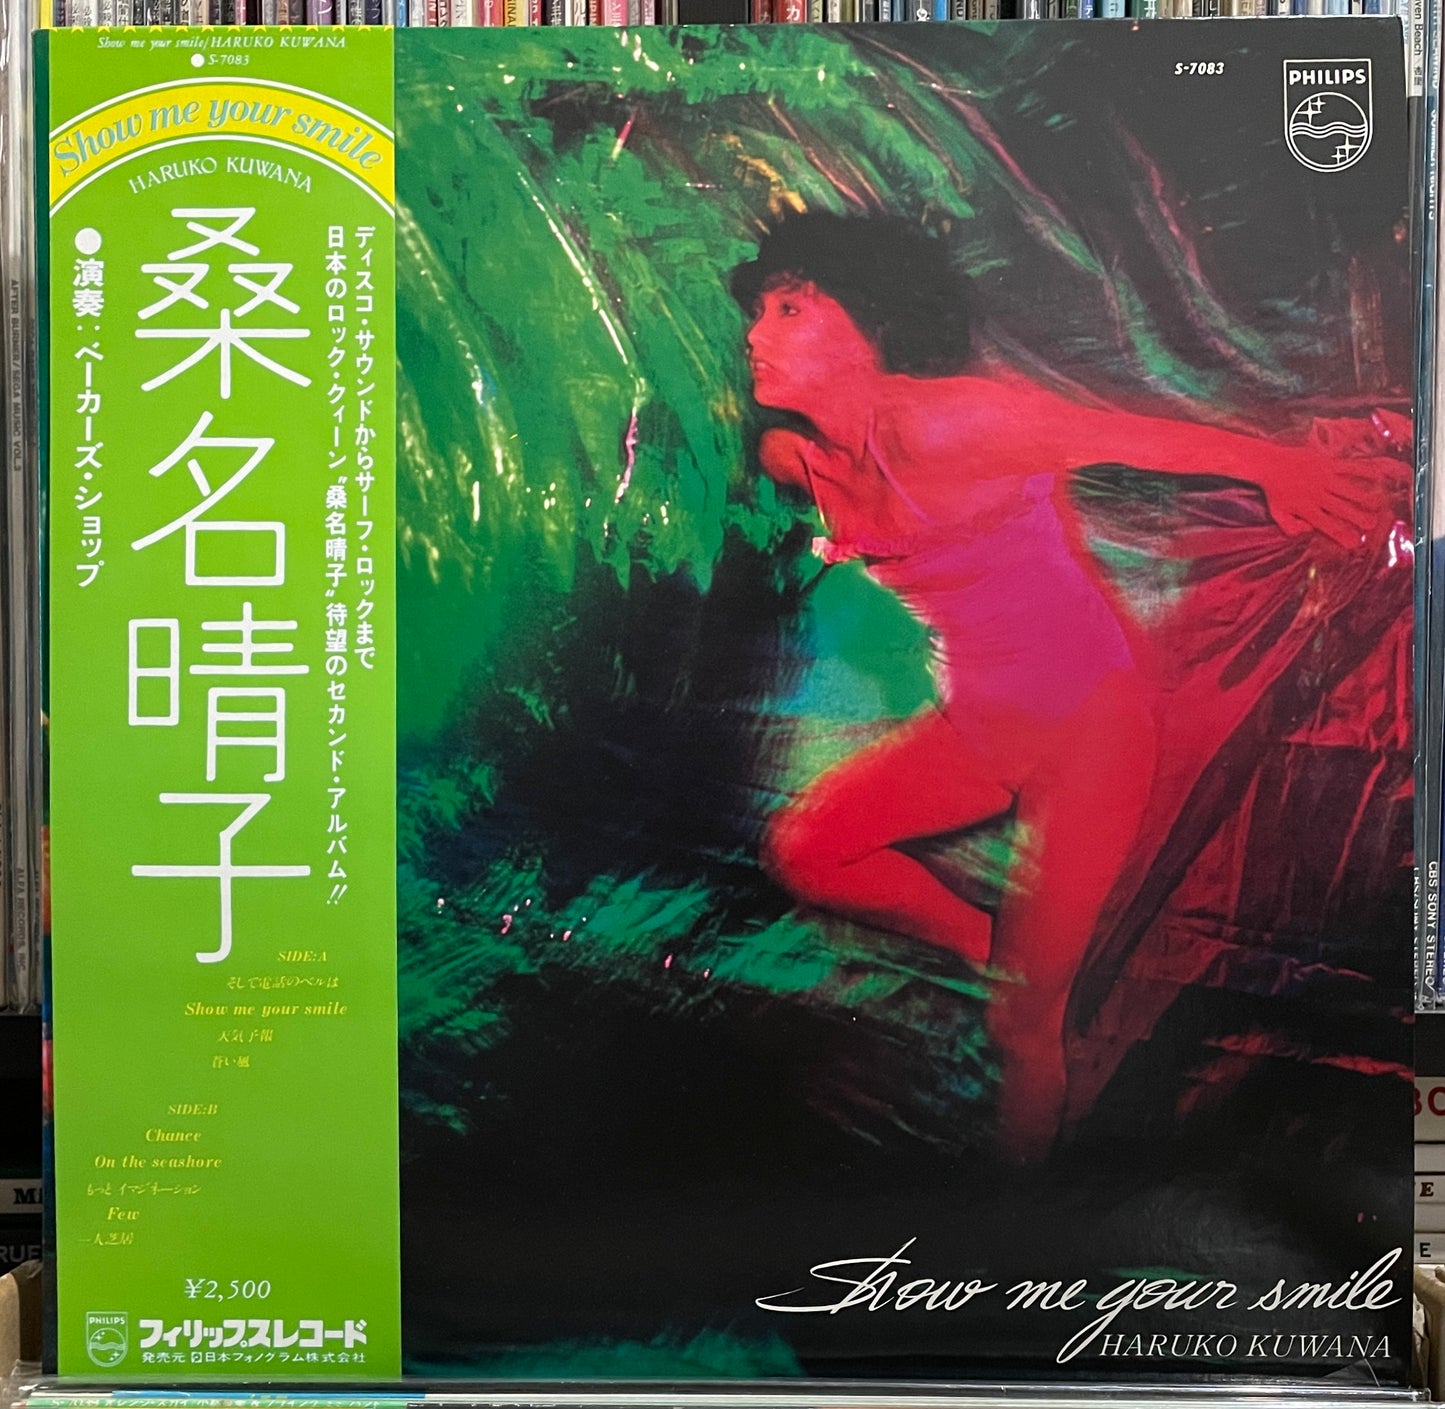 Haruko Kuwana “Show Me Your Smile” (1979)